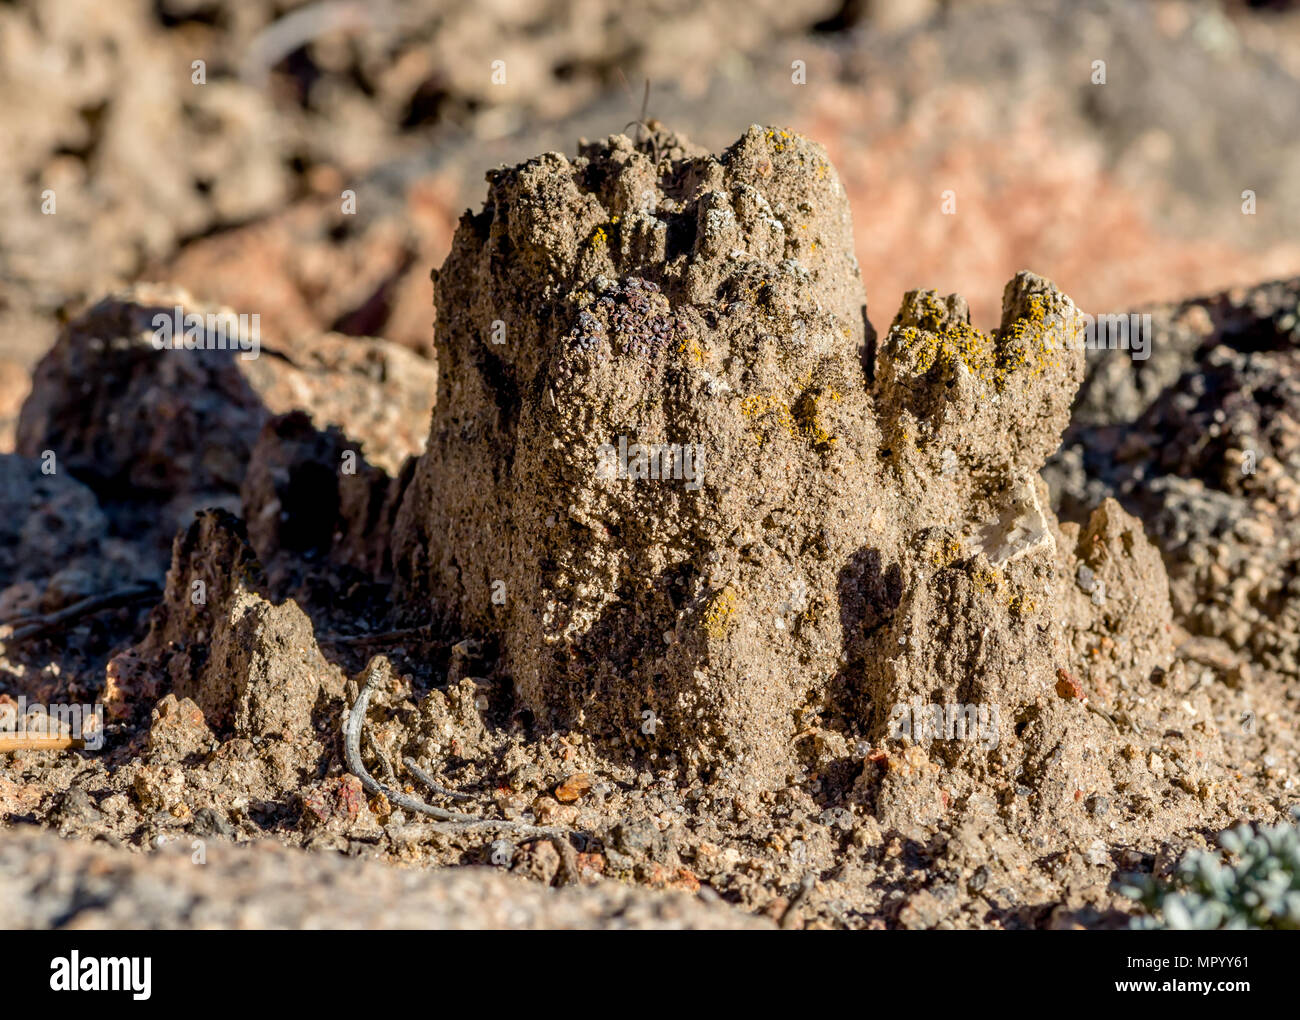 Einige der höchsten biologischen Boden Kruste ich in Nevada gesehen haben. Dieses Schloss wurde fast 3' hoch. Stockfoto